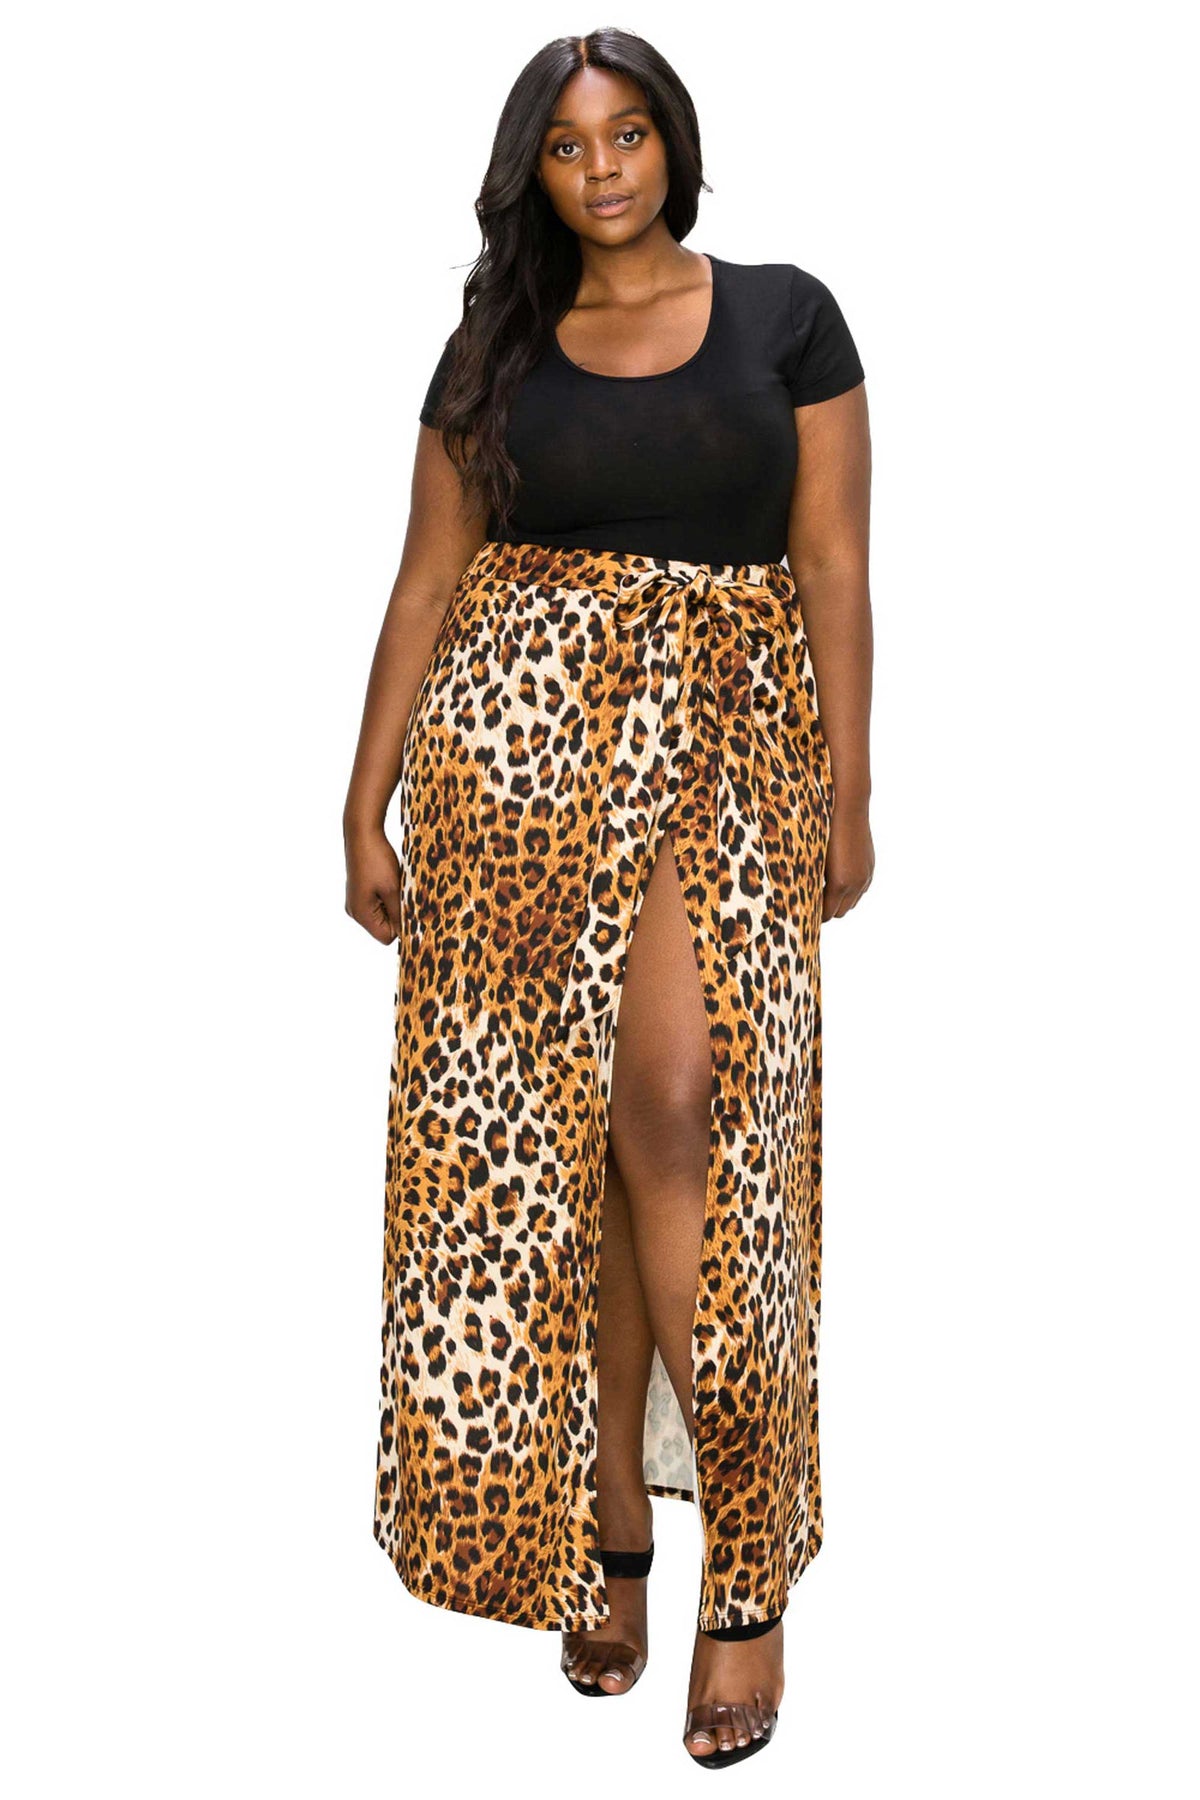 Leopard Wrap Maxi Skirt - L I V D